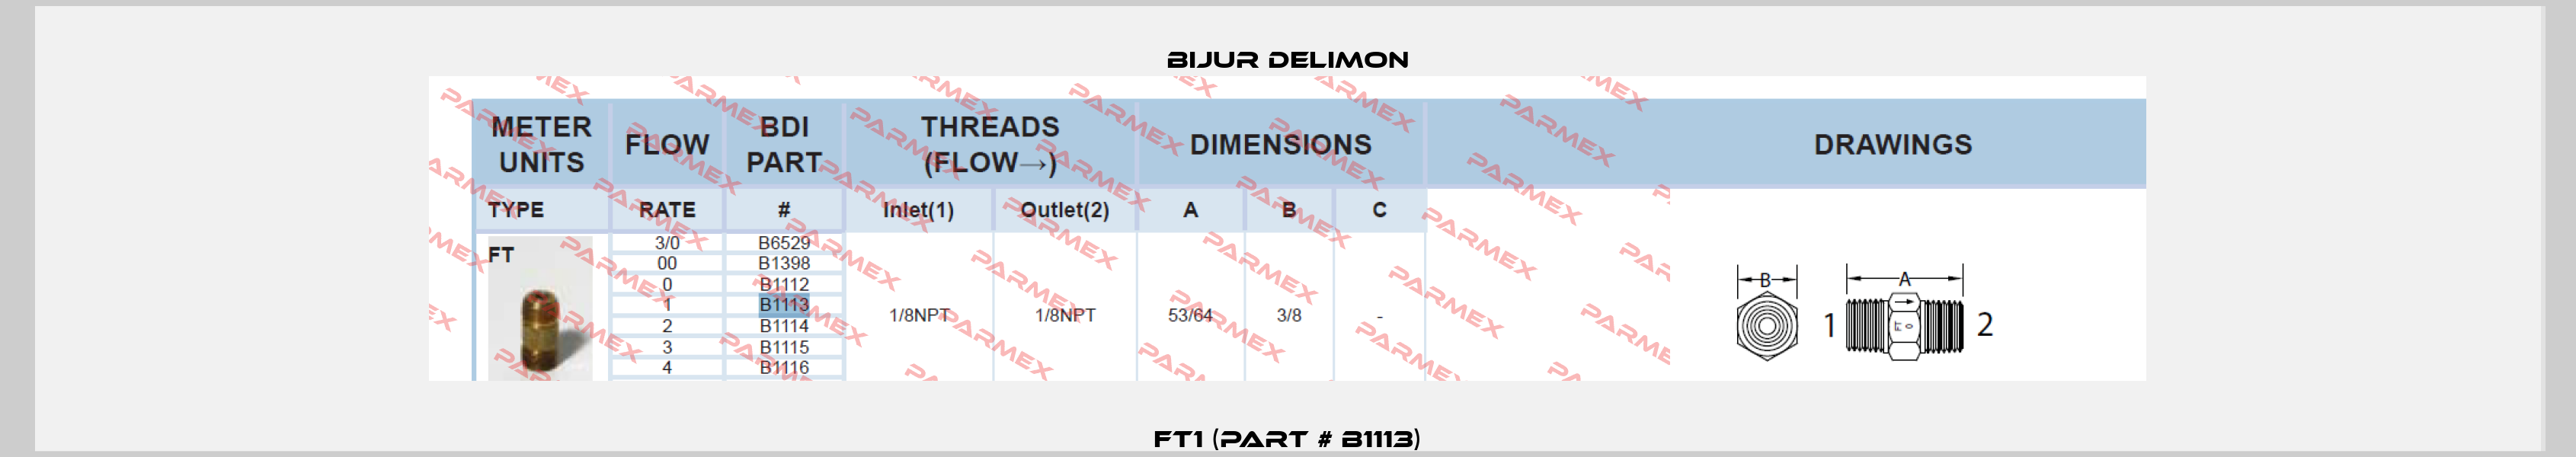 FT1 (Part # B1113) Bijur Delimon